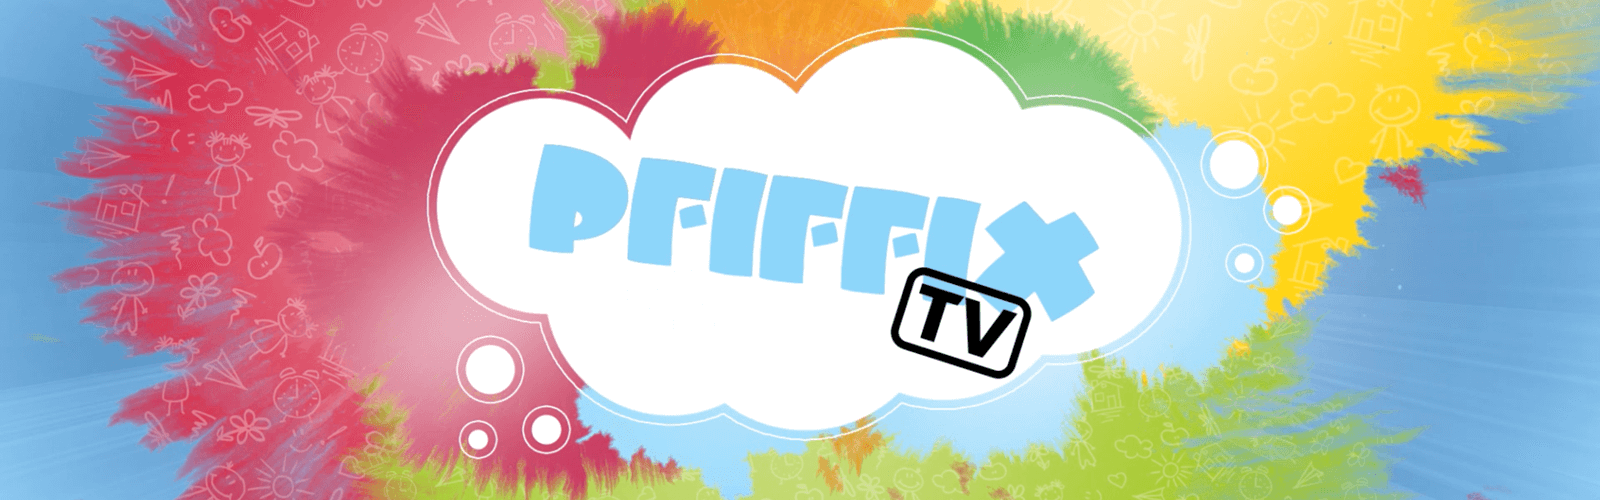 Bunte Farbkleckse, in der Mitte steht PFIFFIX TV.